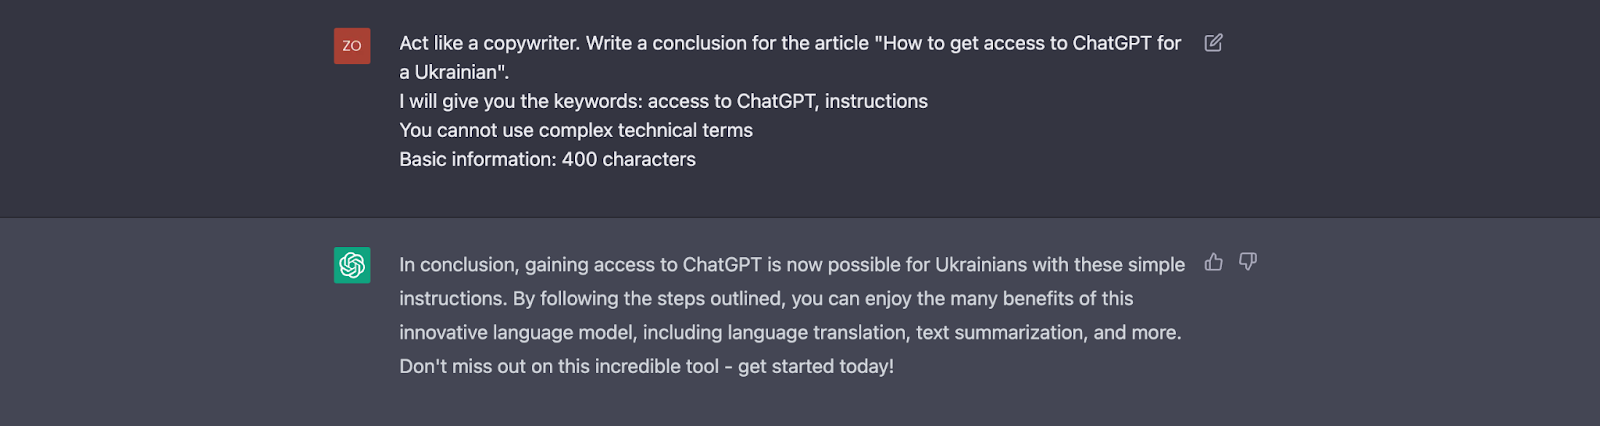 Как украинцу получить доступ в ChatGPT? | Хостинговая компания HostPro 